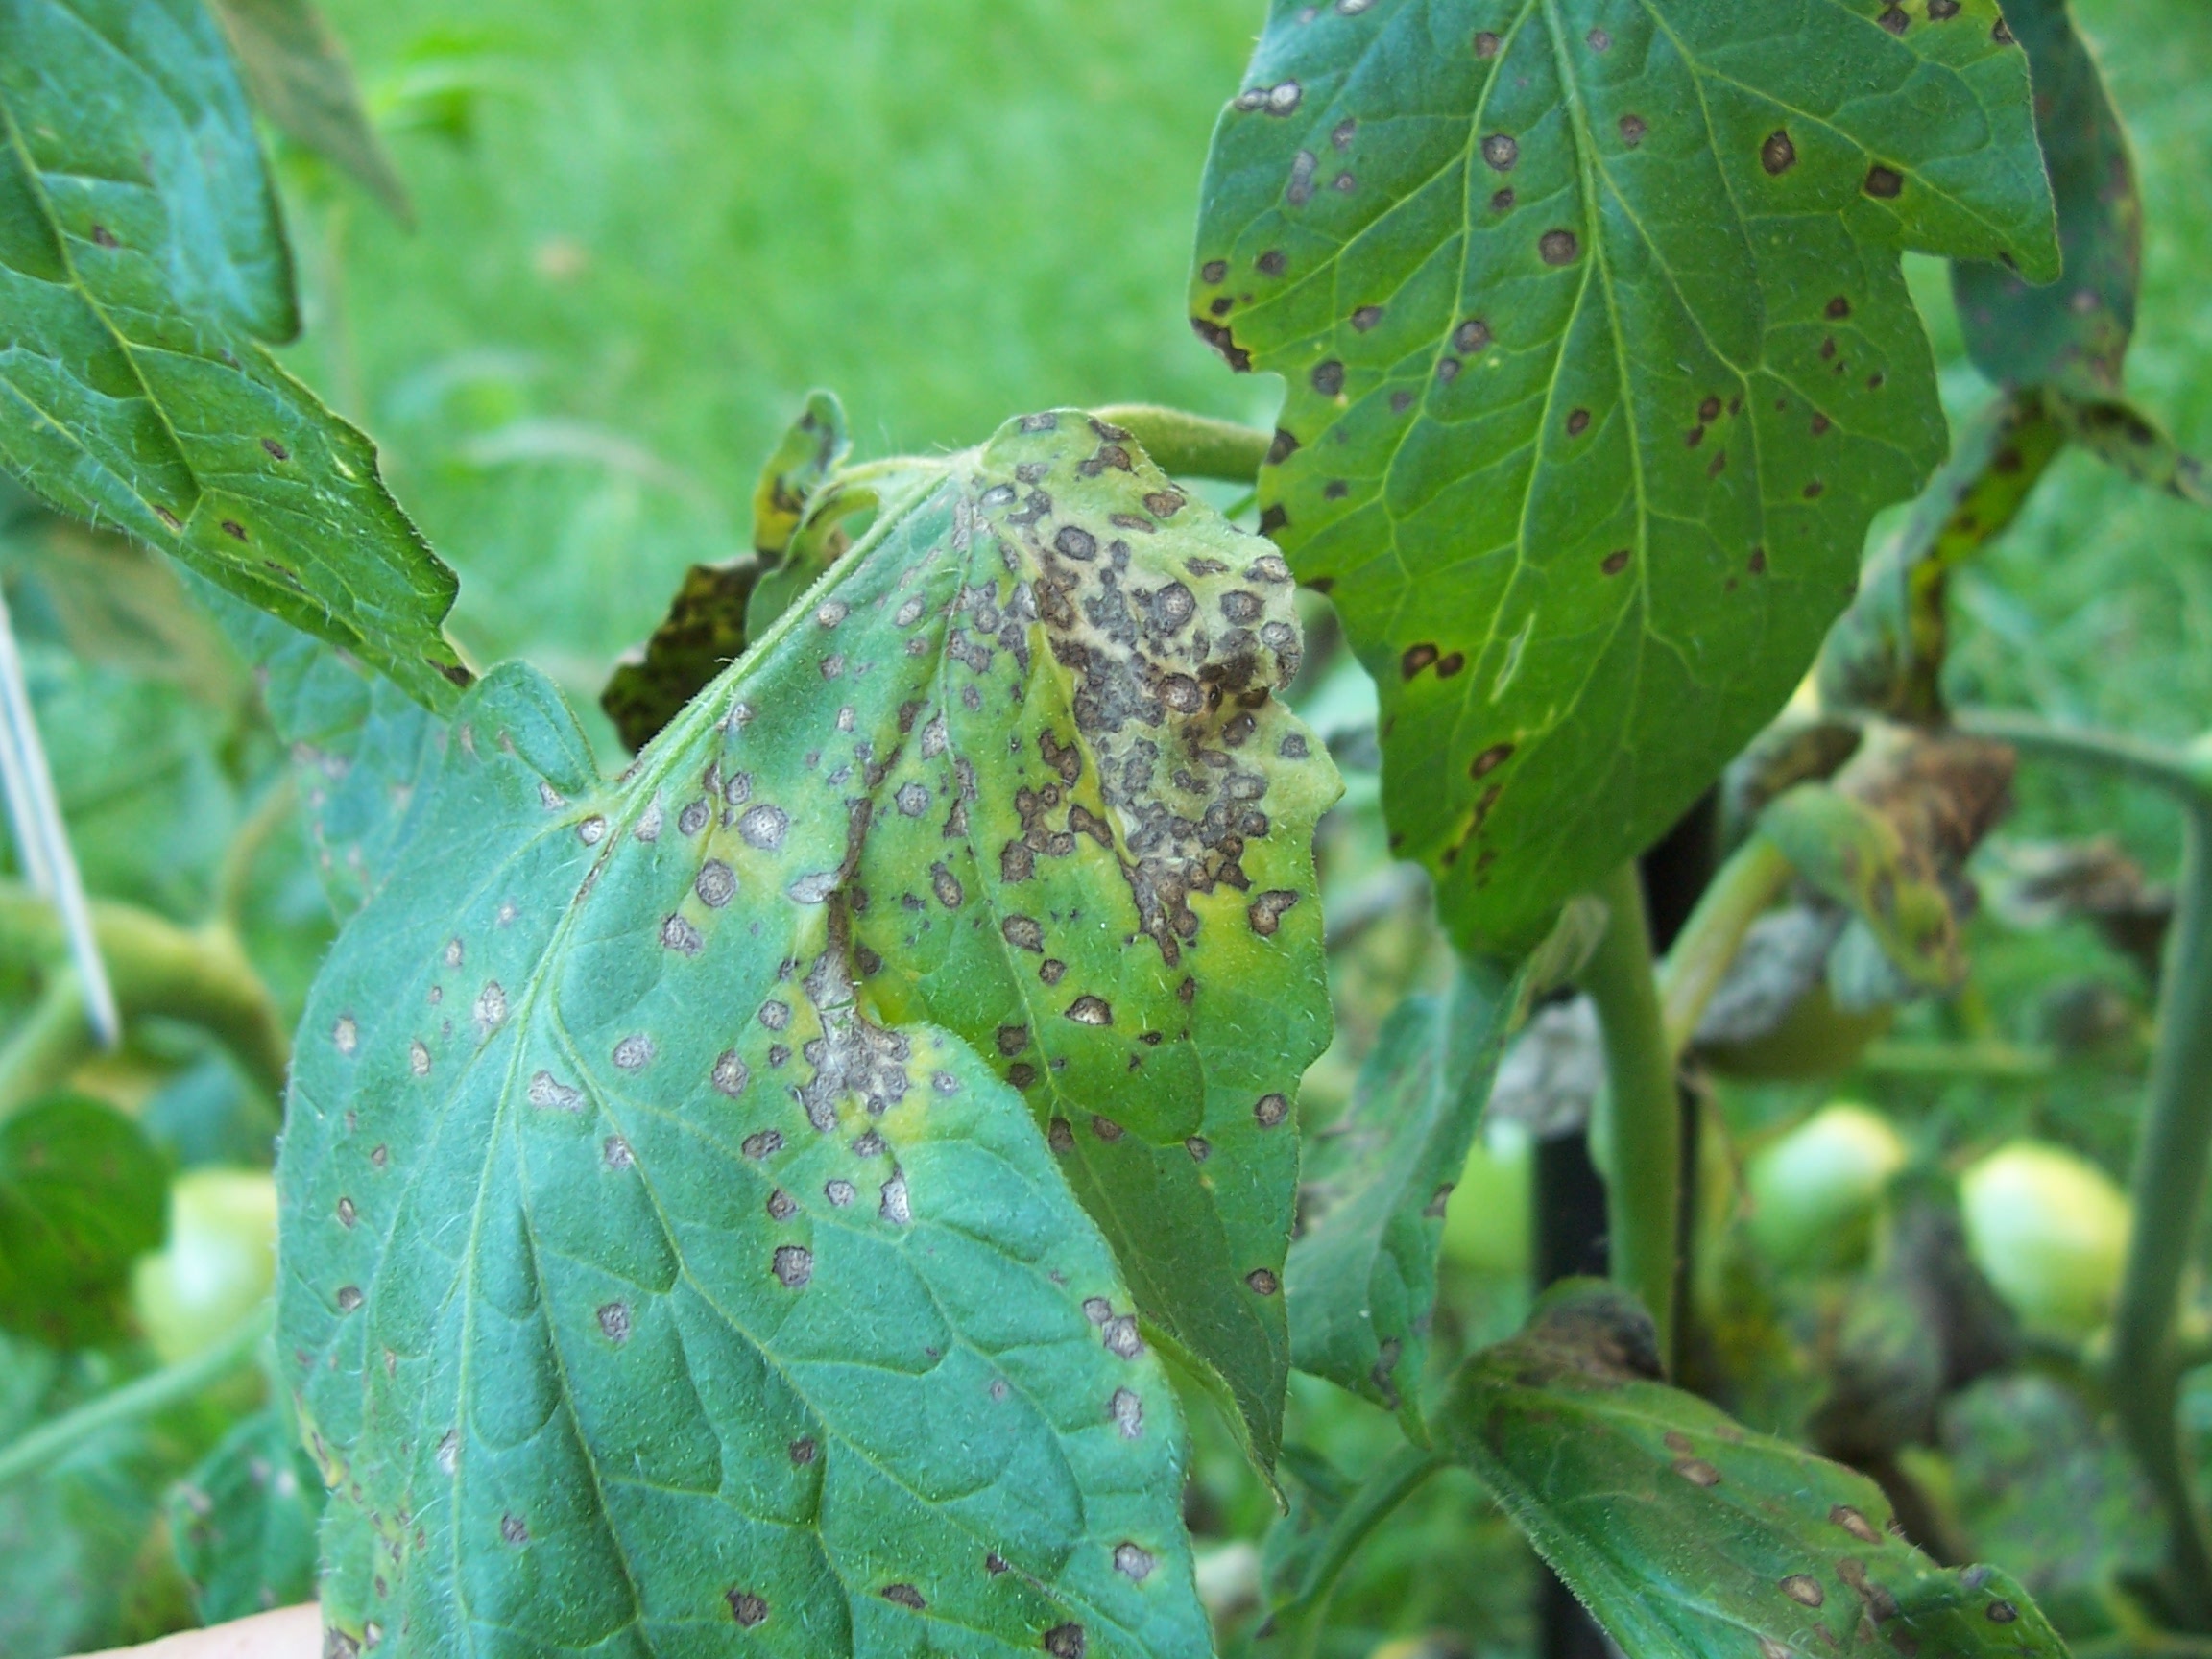 Close-up of Septoria leaf spot.